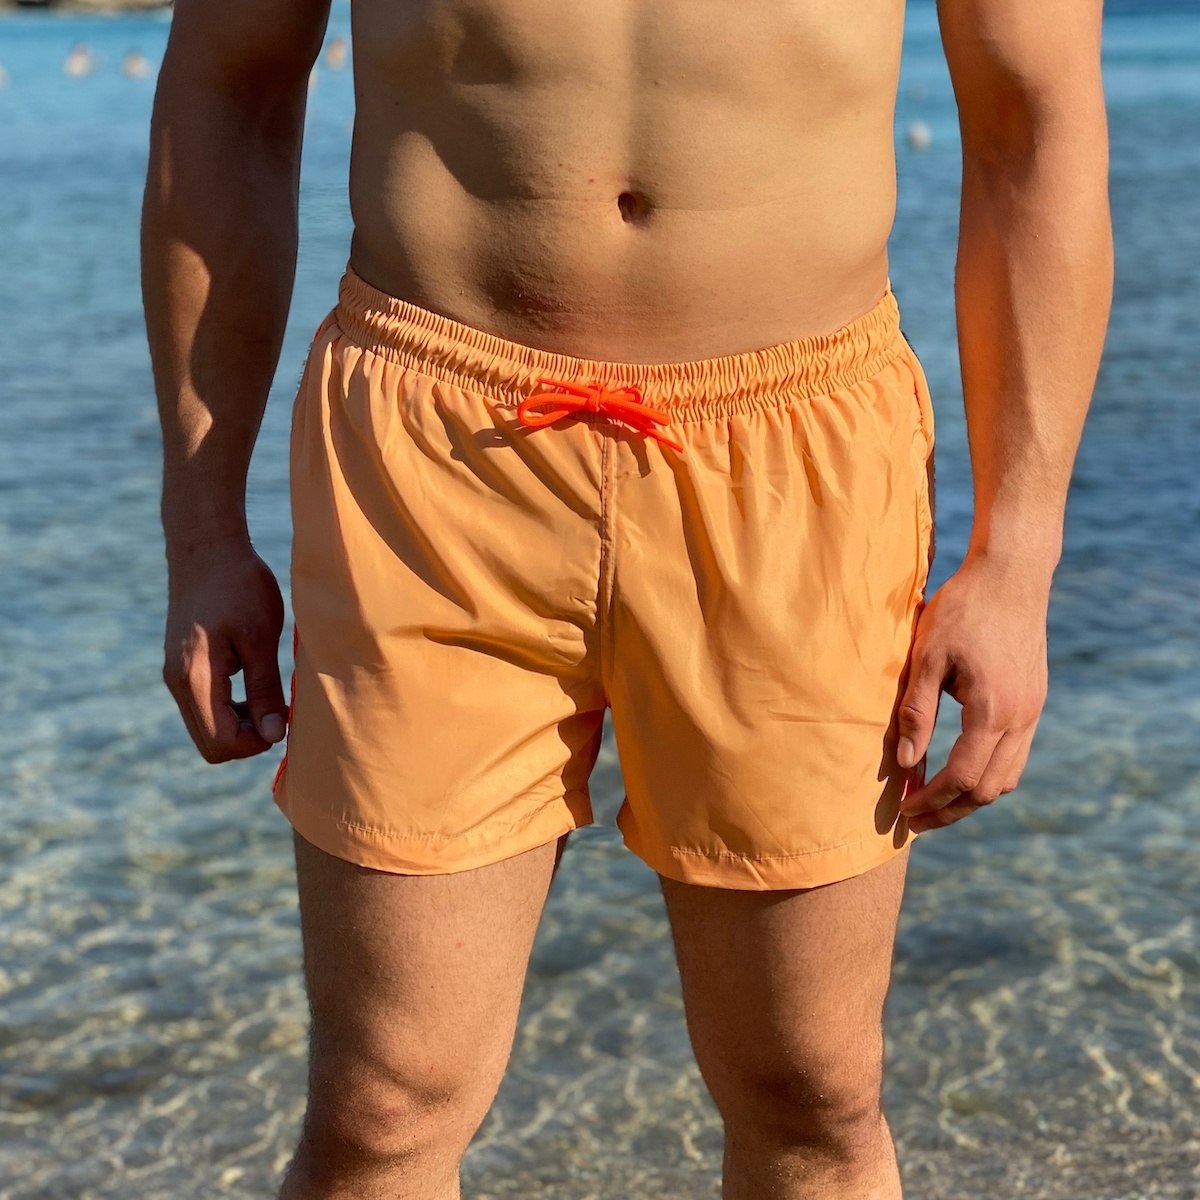 Men's Swimming Short In Light Orange - 1